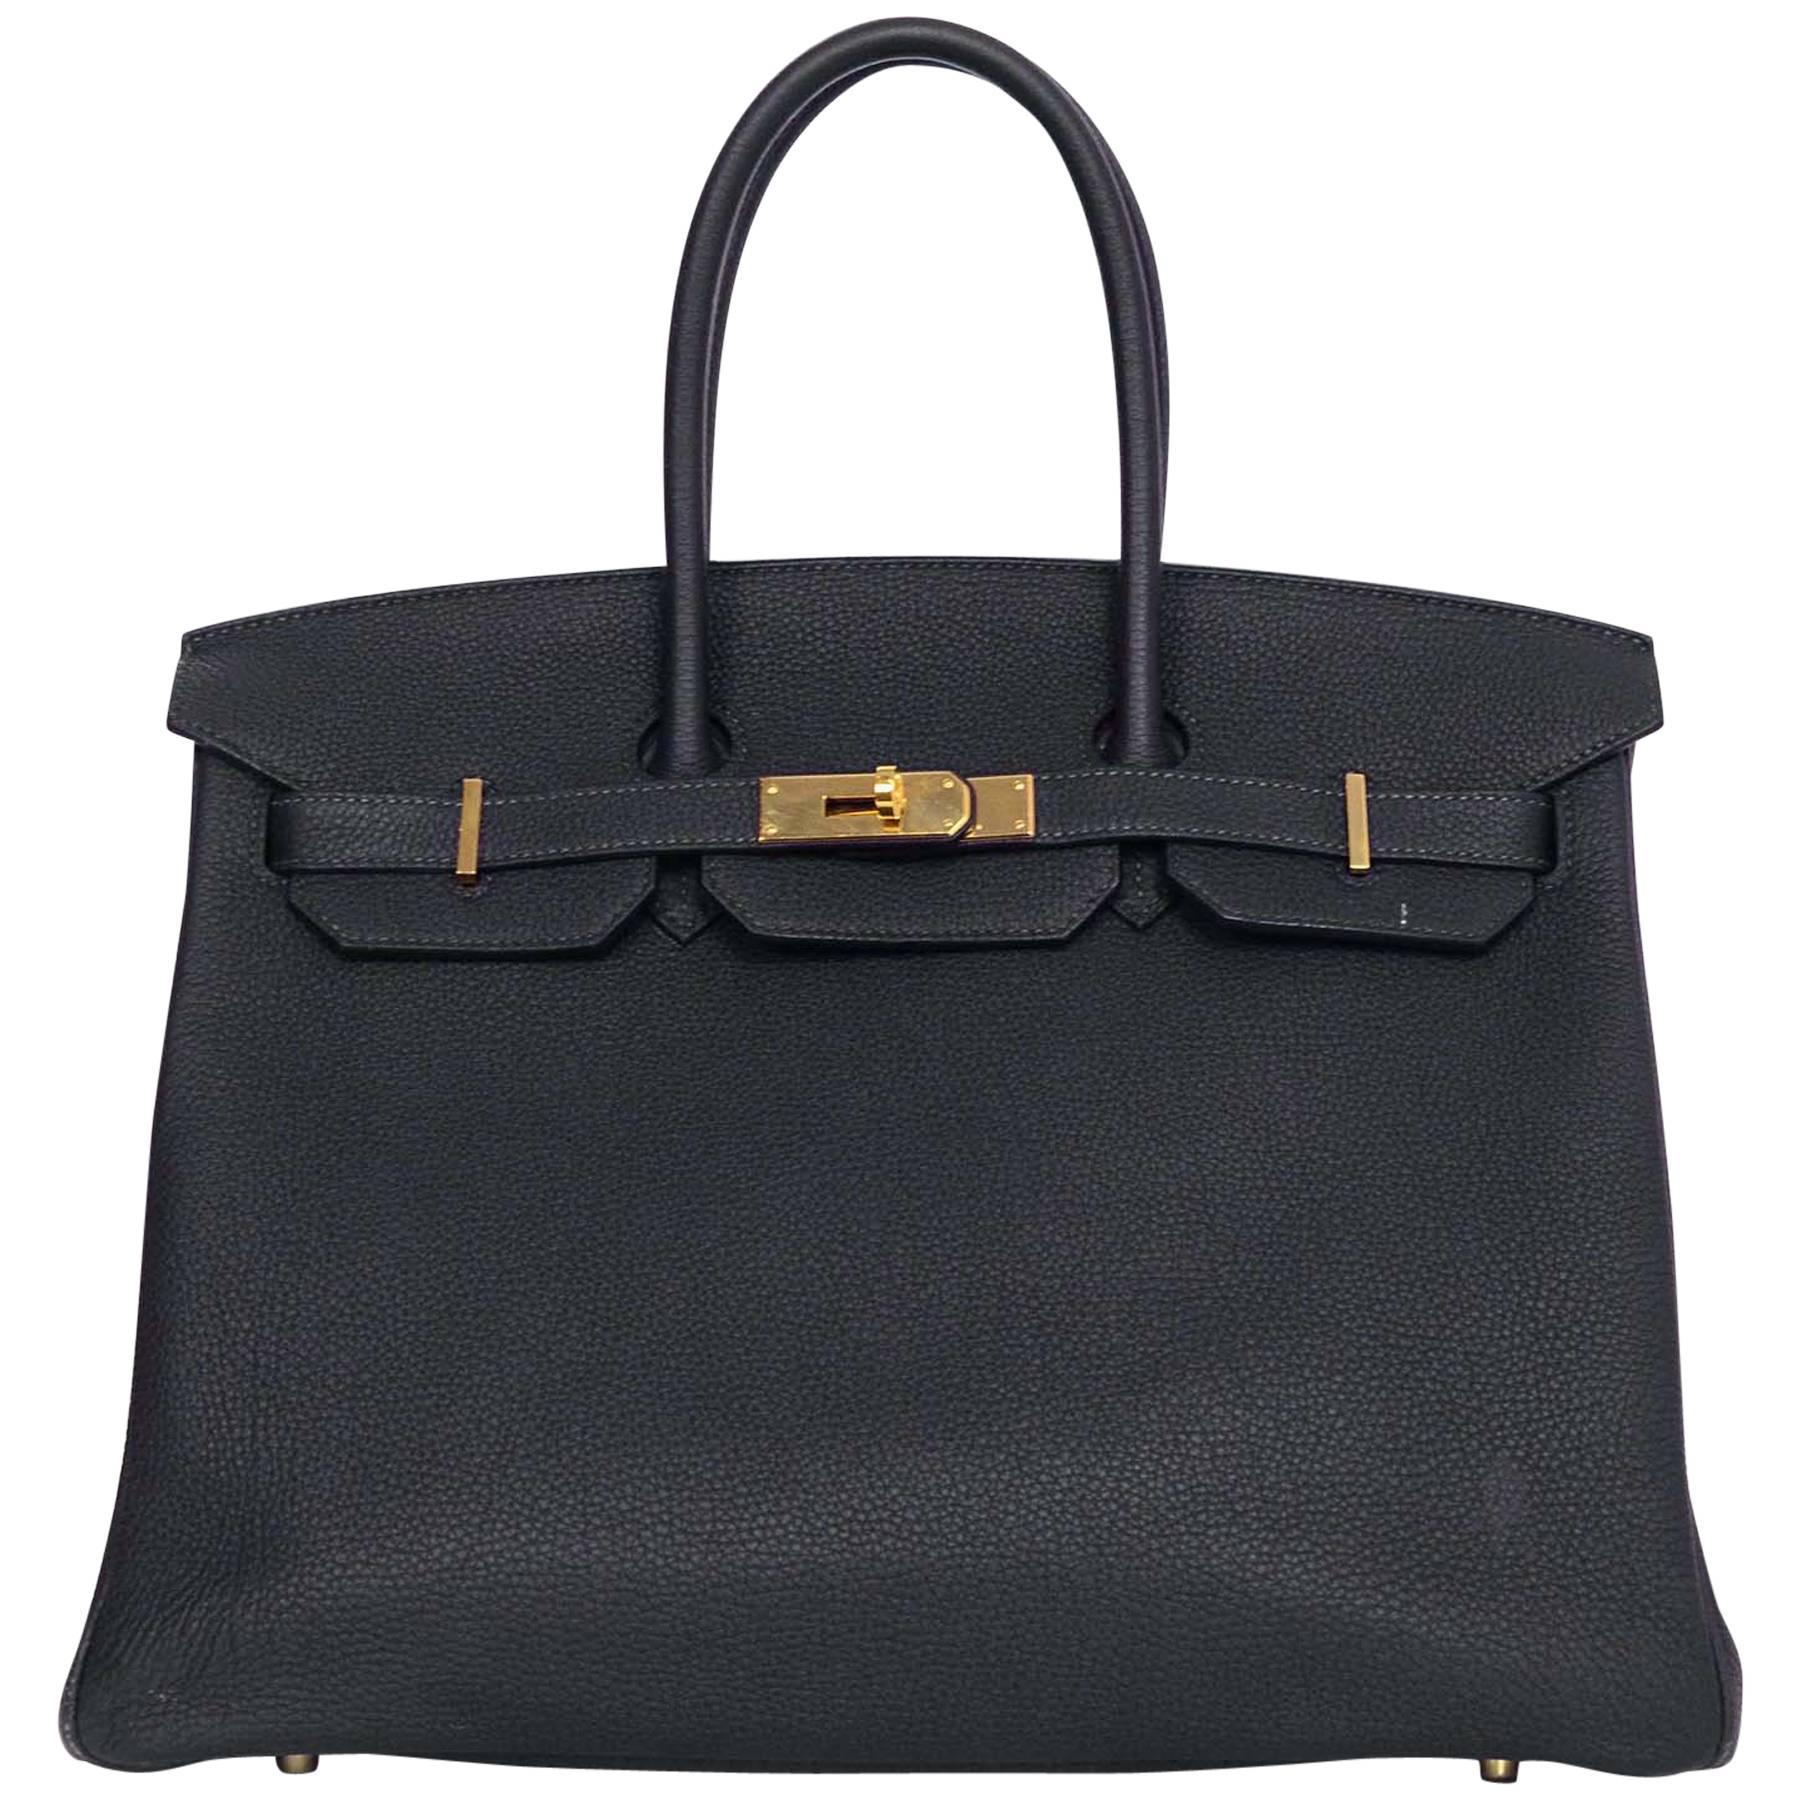 Hermes Bleu Obscur Togo Leather 35cm Birkin Bag w. Gold Hardware